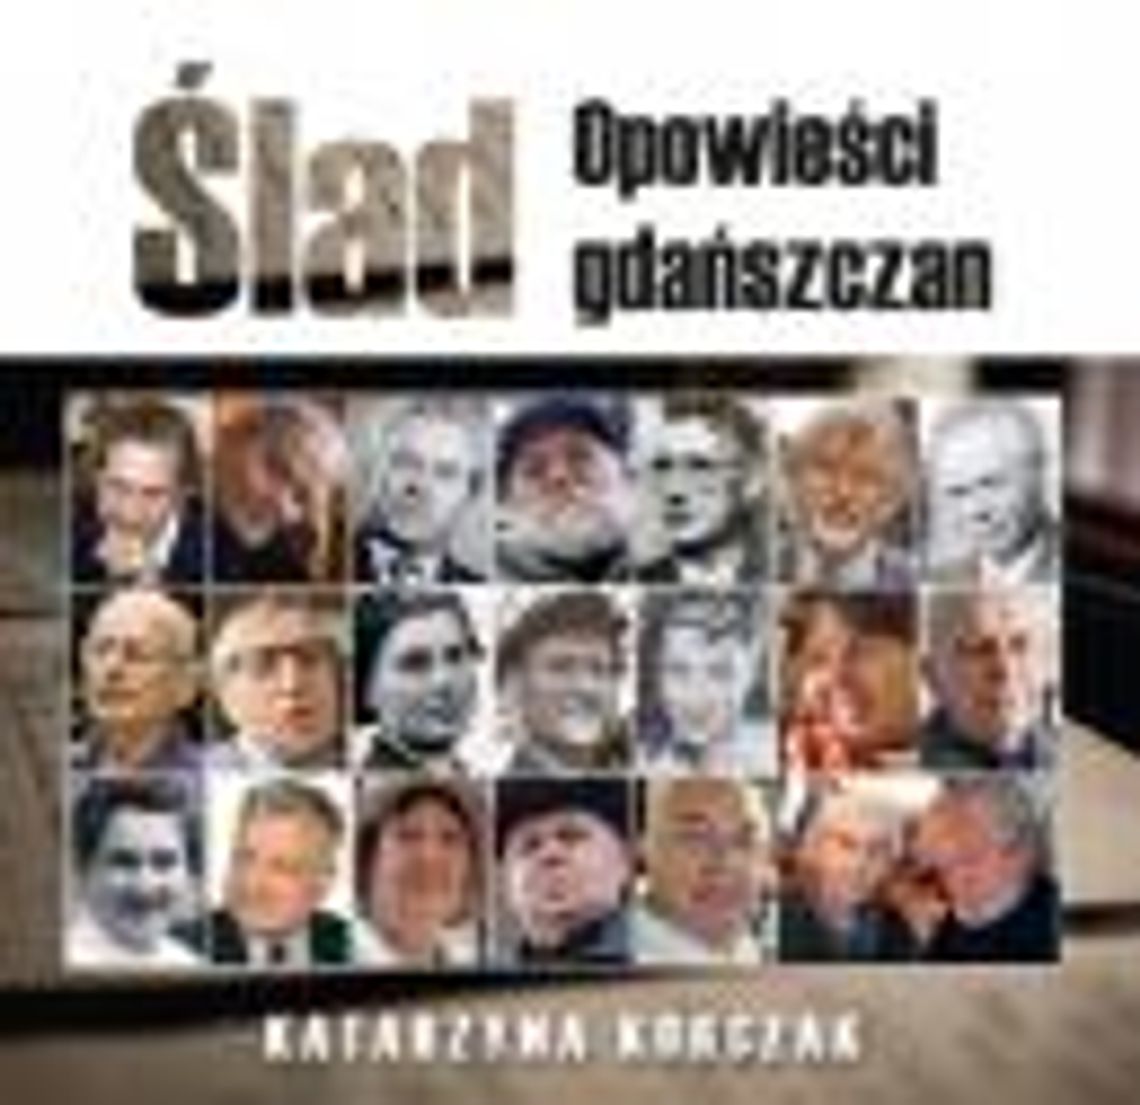 Promocja książki Katarzyny Korczak pt. "Ślad. Opowieści gdańszczan".